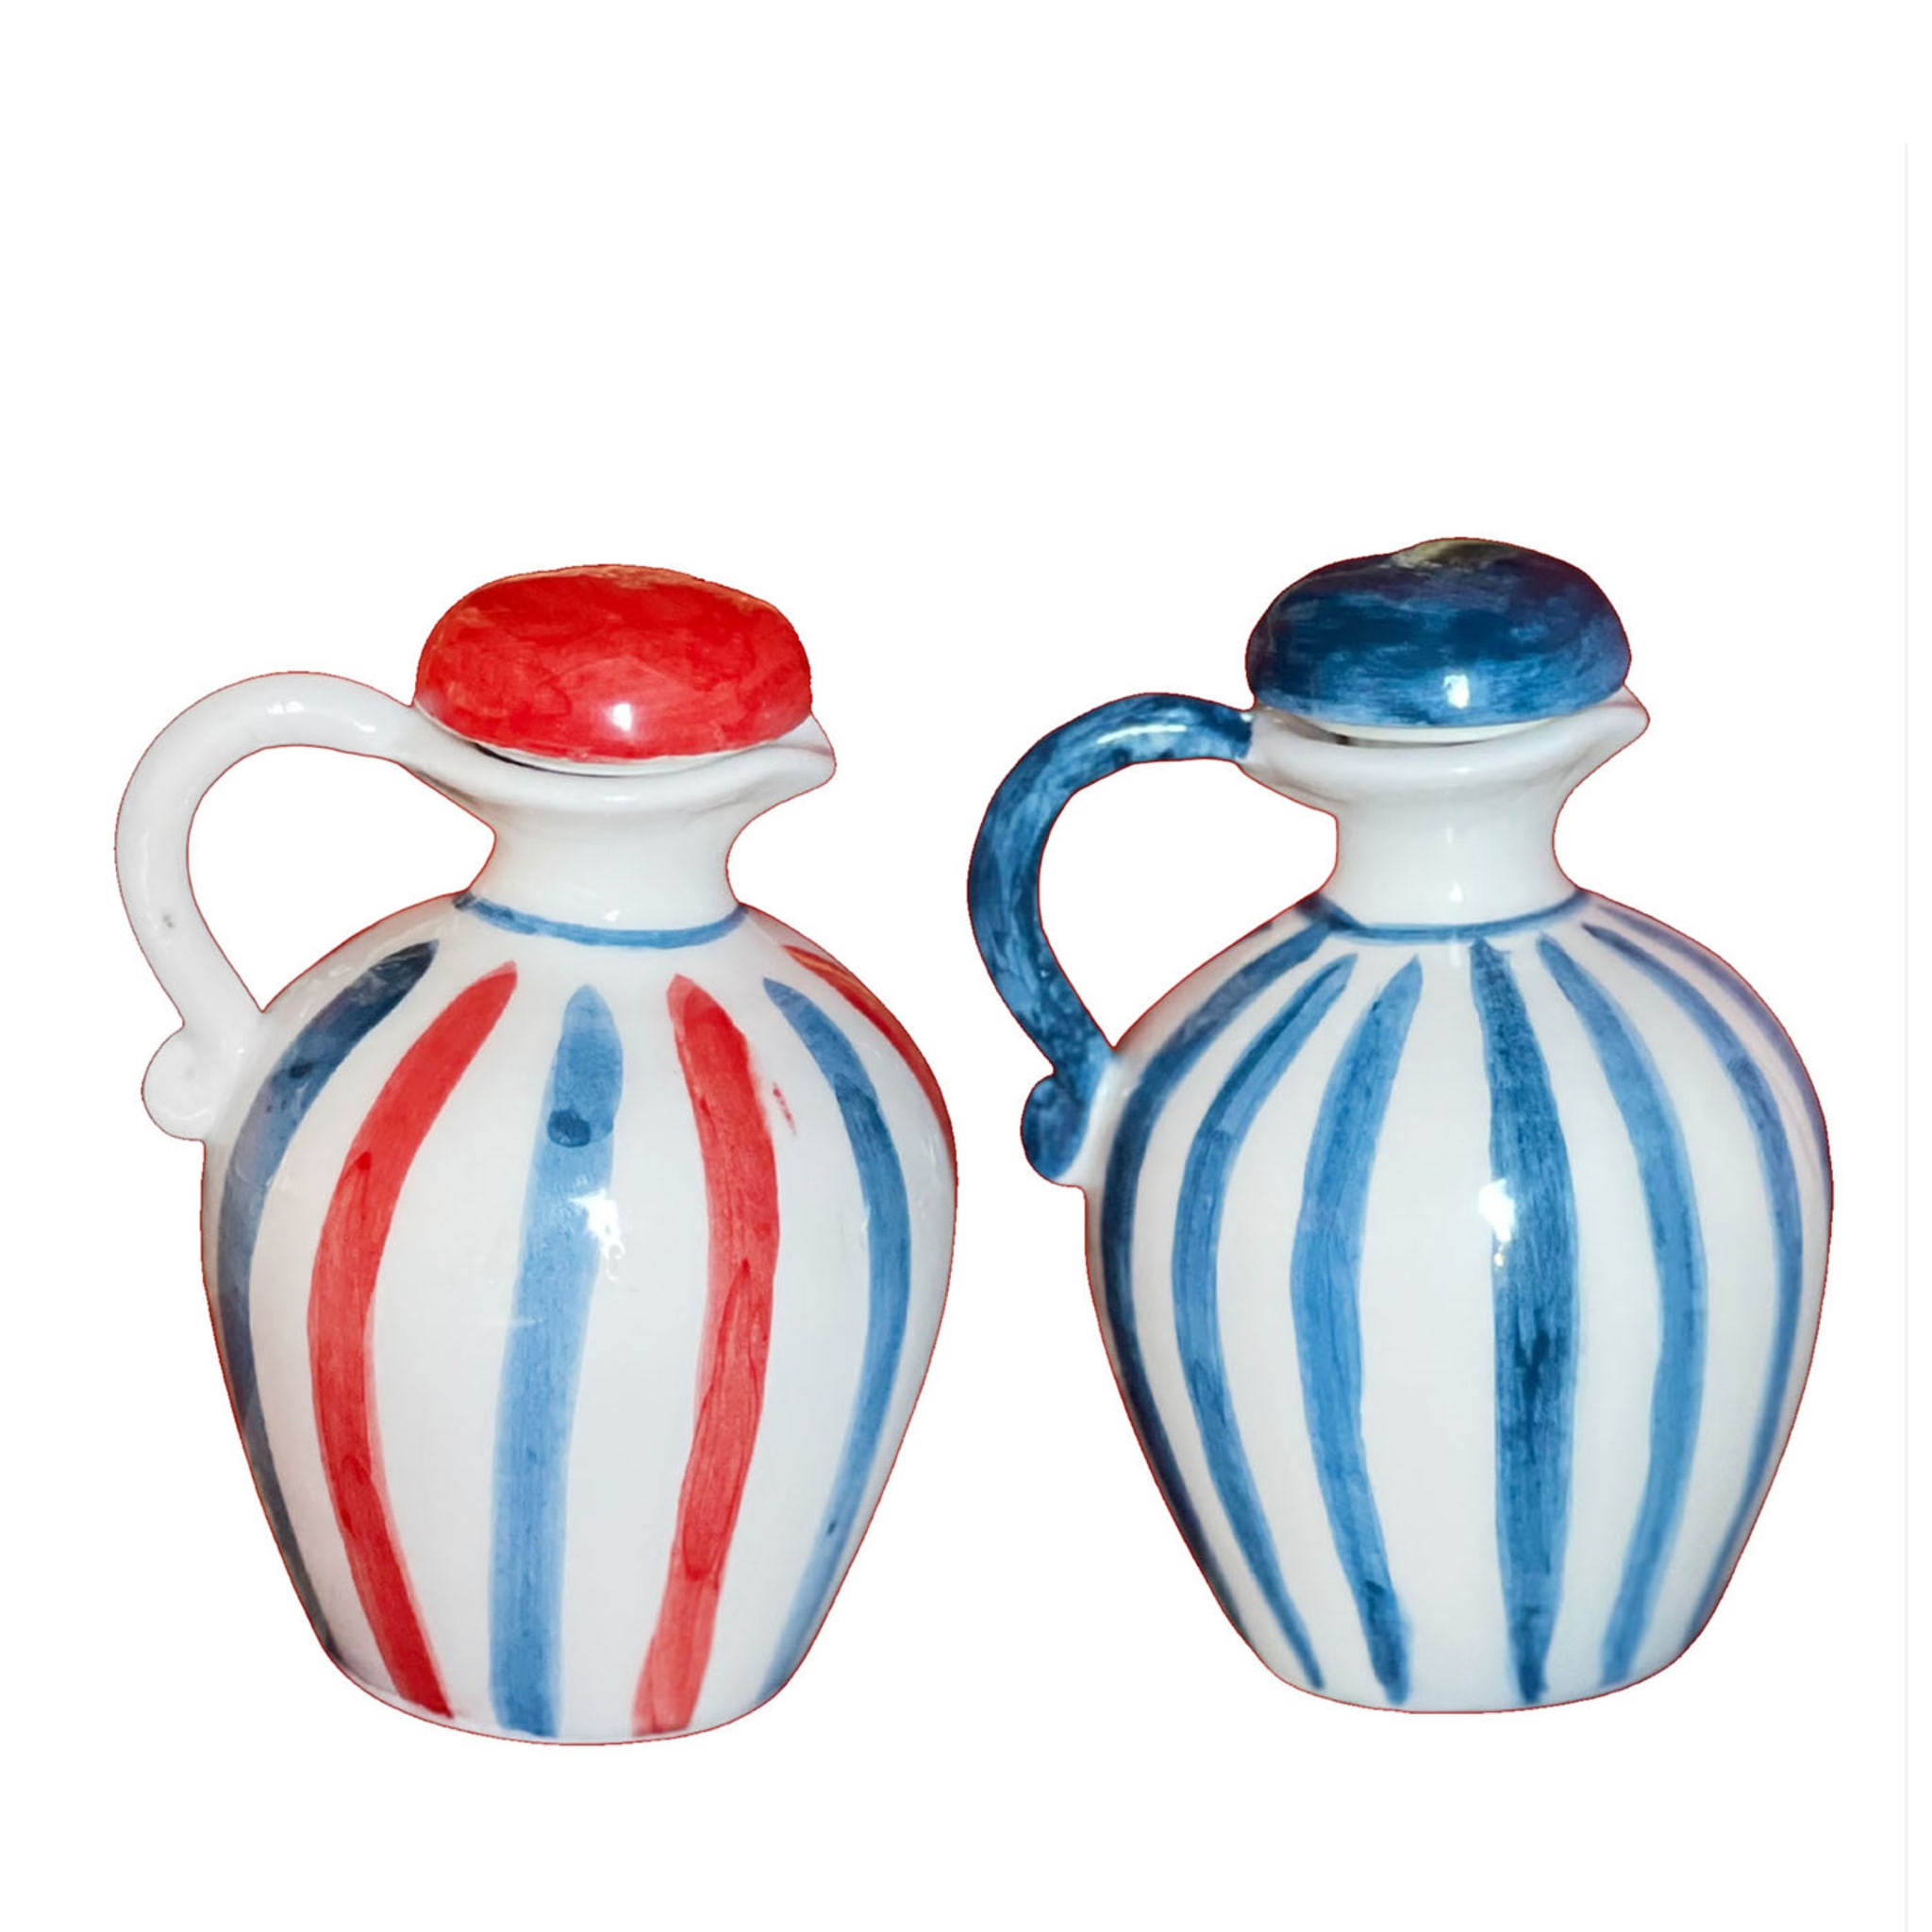 Satz roter und blauer Olivenöl- und Essigflaschen aus Keramik  - Hauptansicht